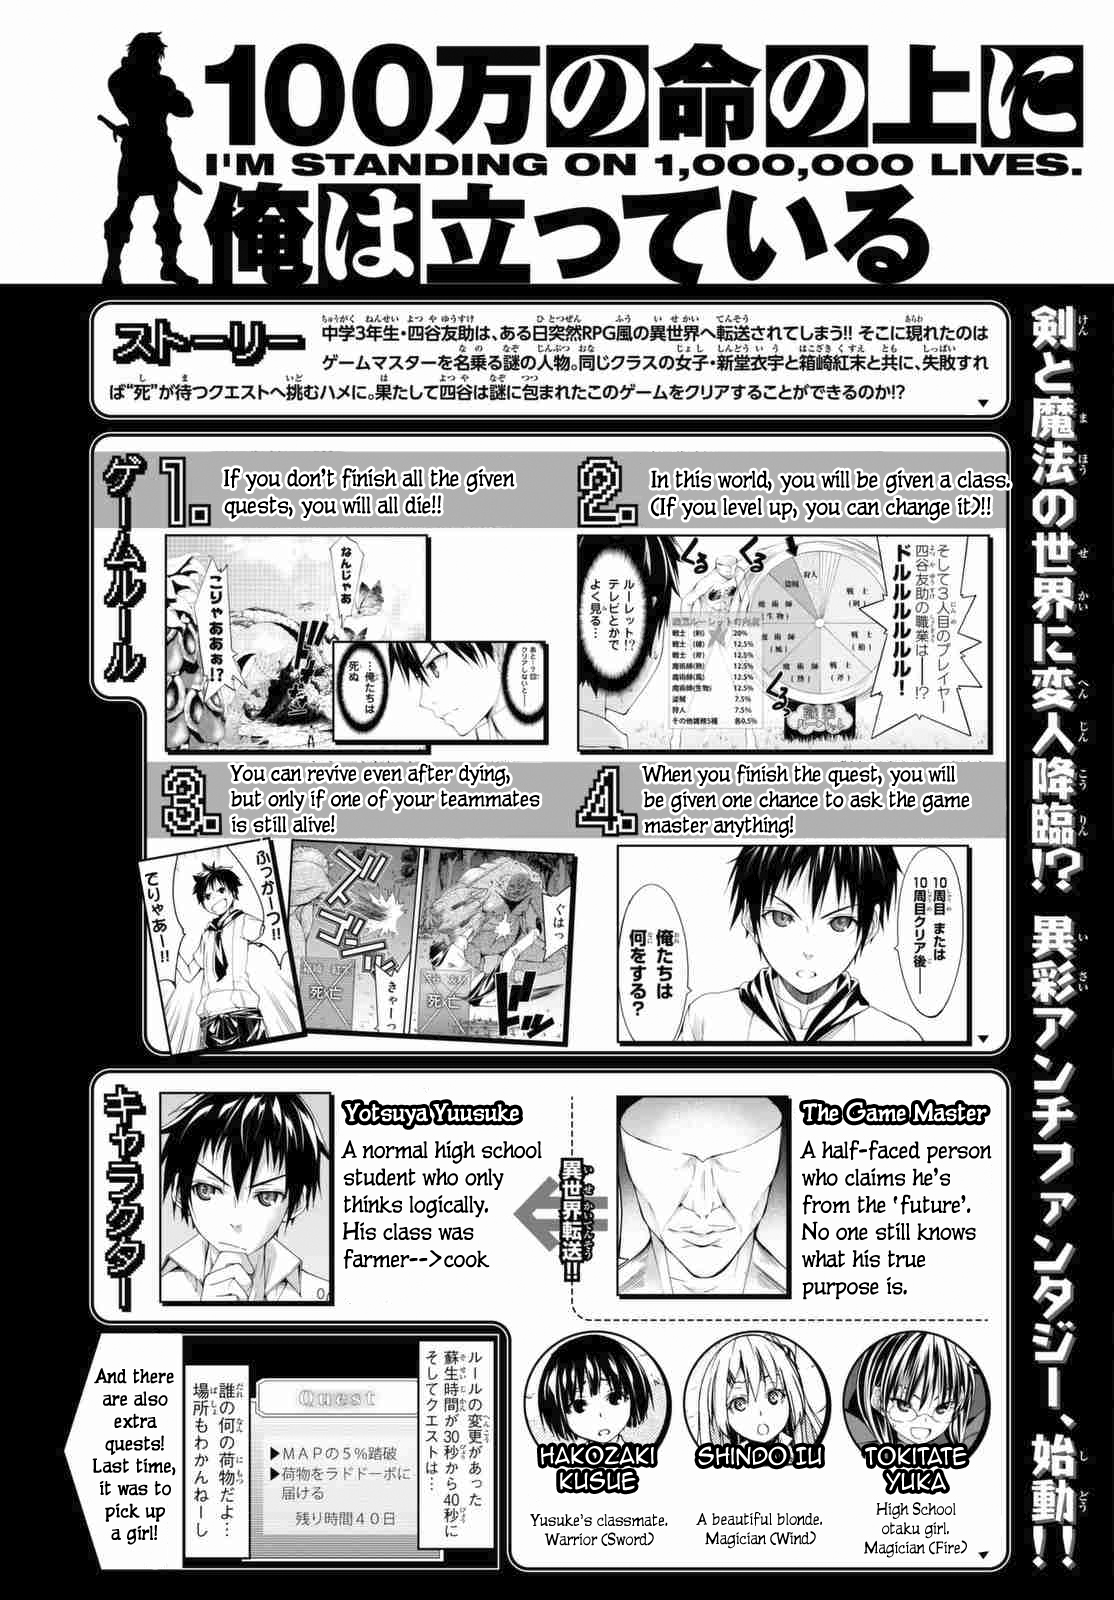 100 man no Inochi no Ue ni Ore wa Tatteiru Vol. 1 Ch. 3.1